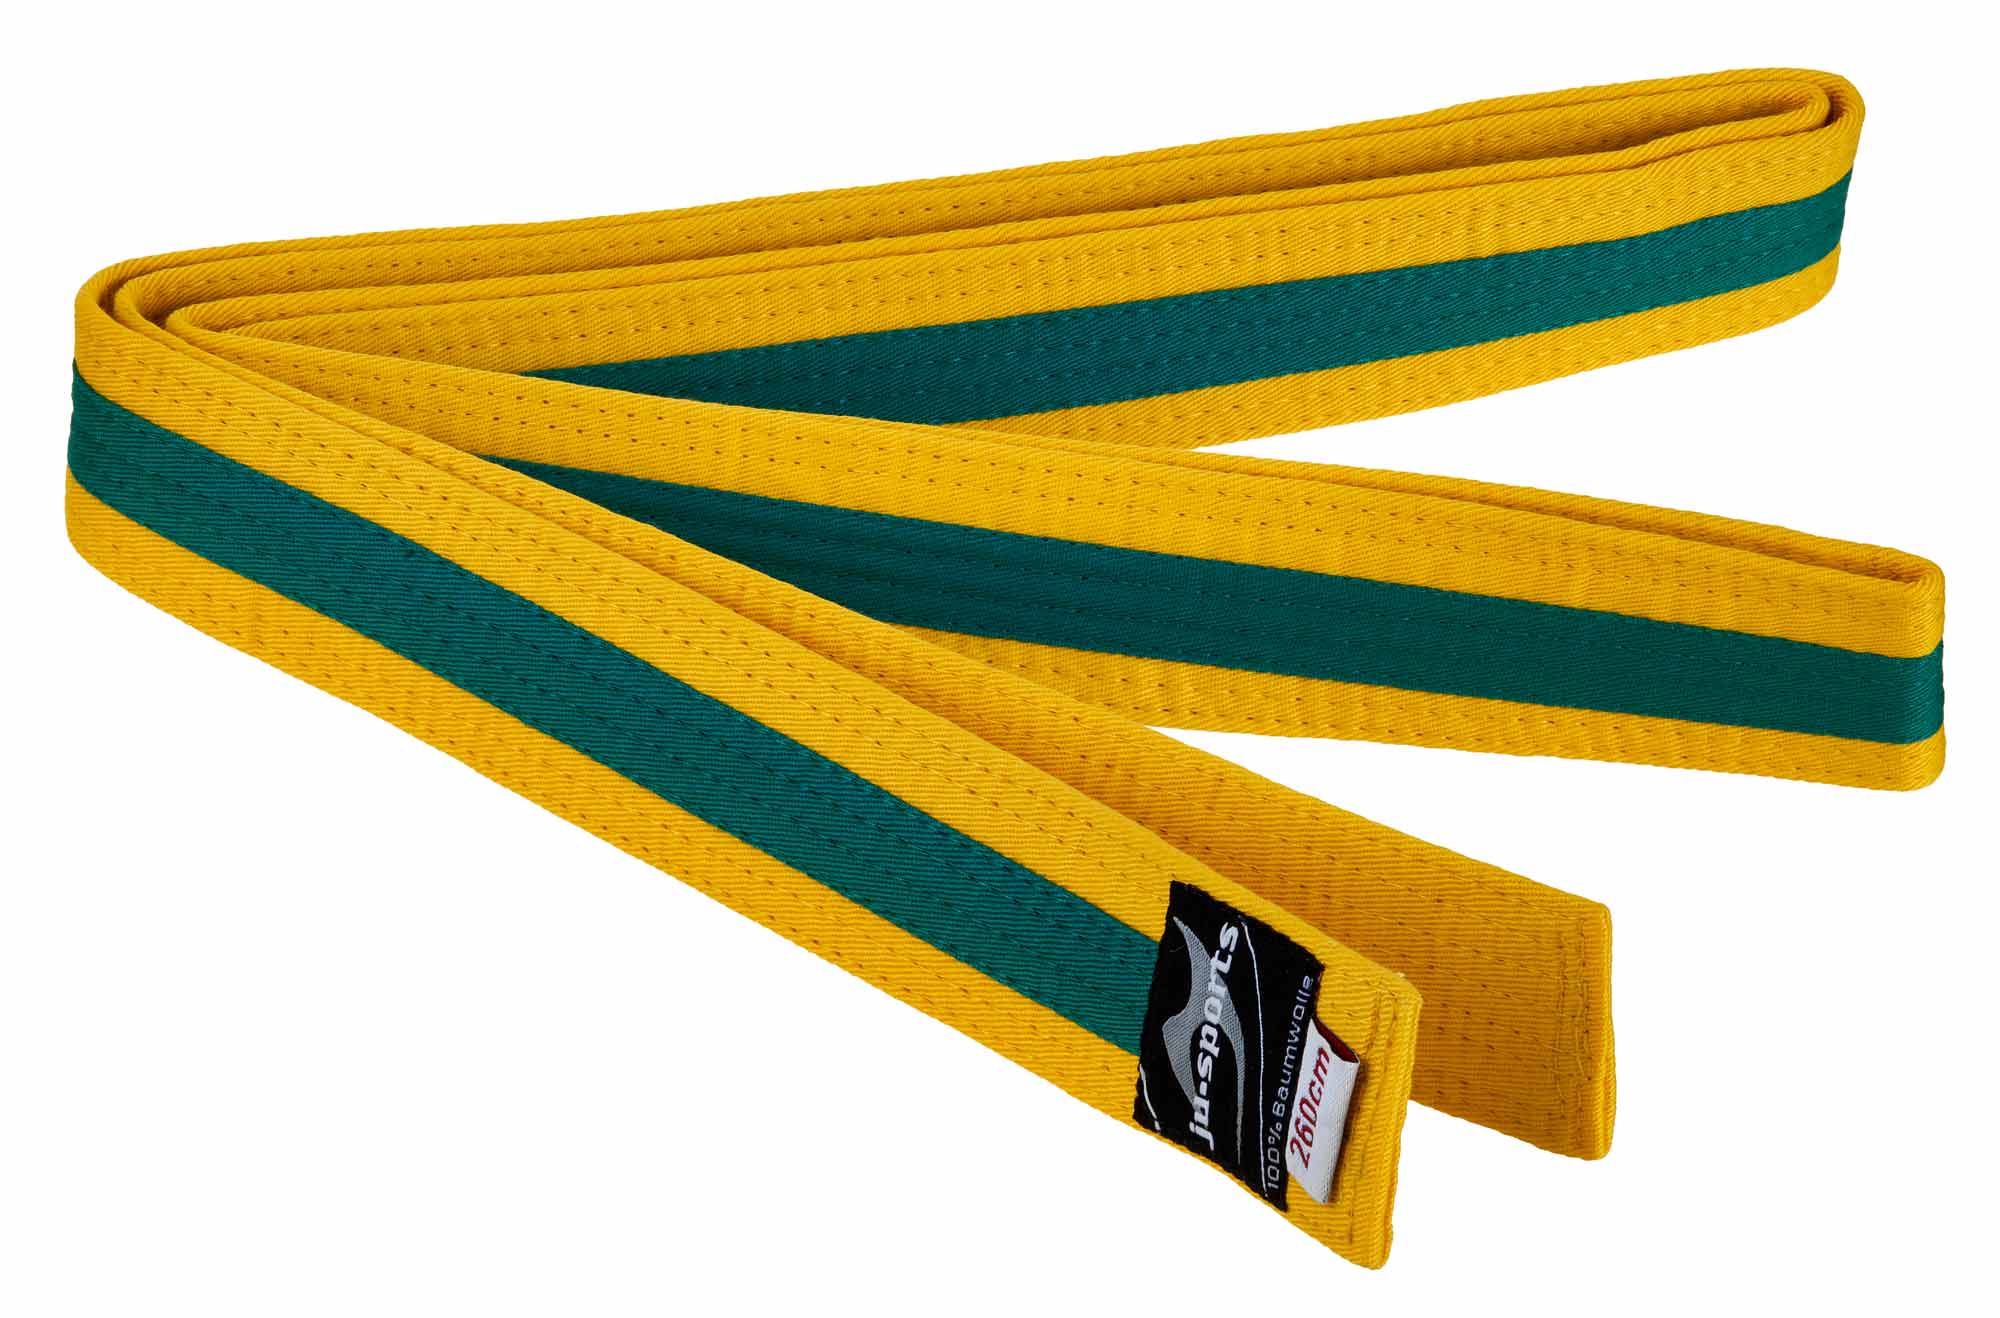 Ju-Sports budo belt yellow/green/yellow